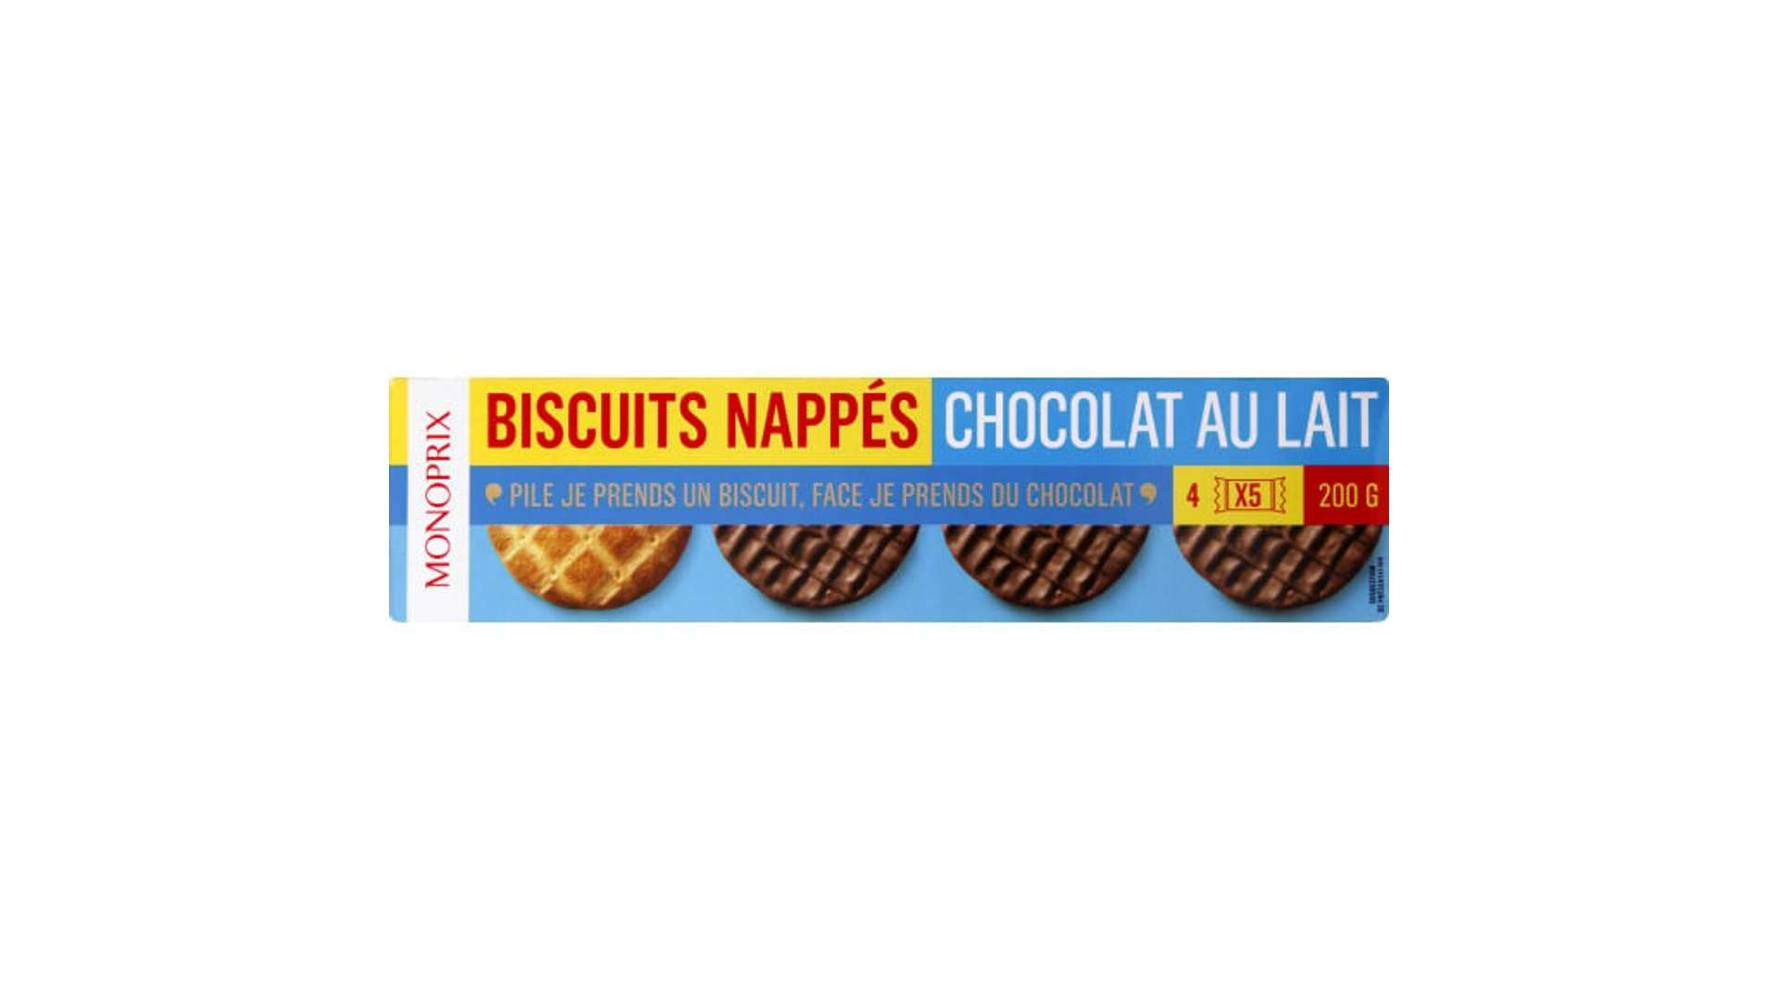 Monoprix Biscuits nappés chocolat au lait Les 4 sachets, 200g